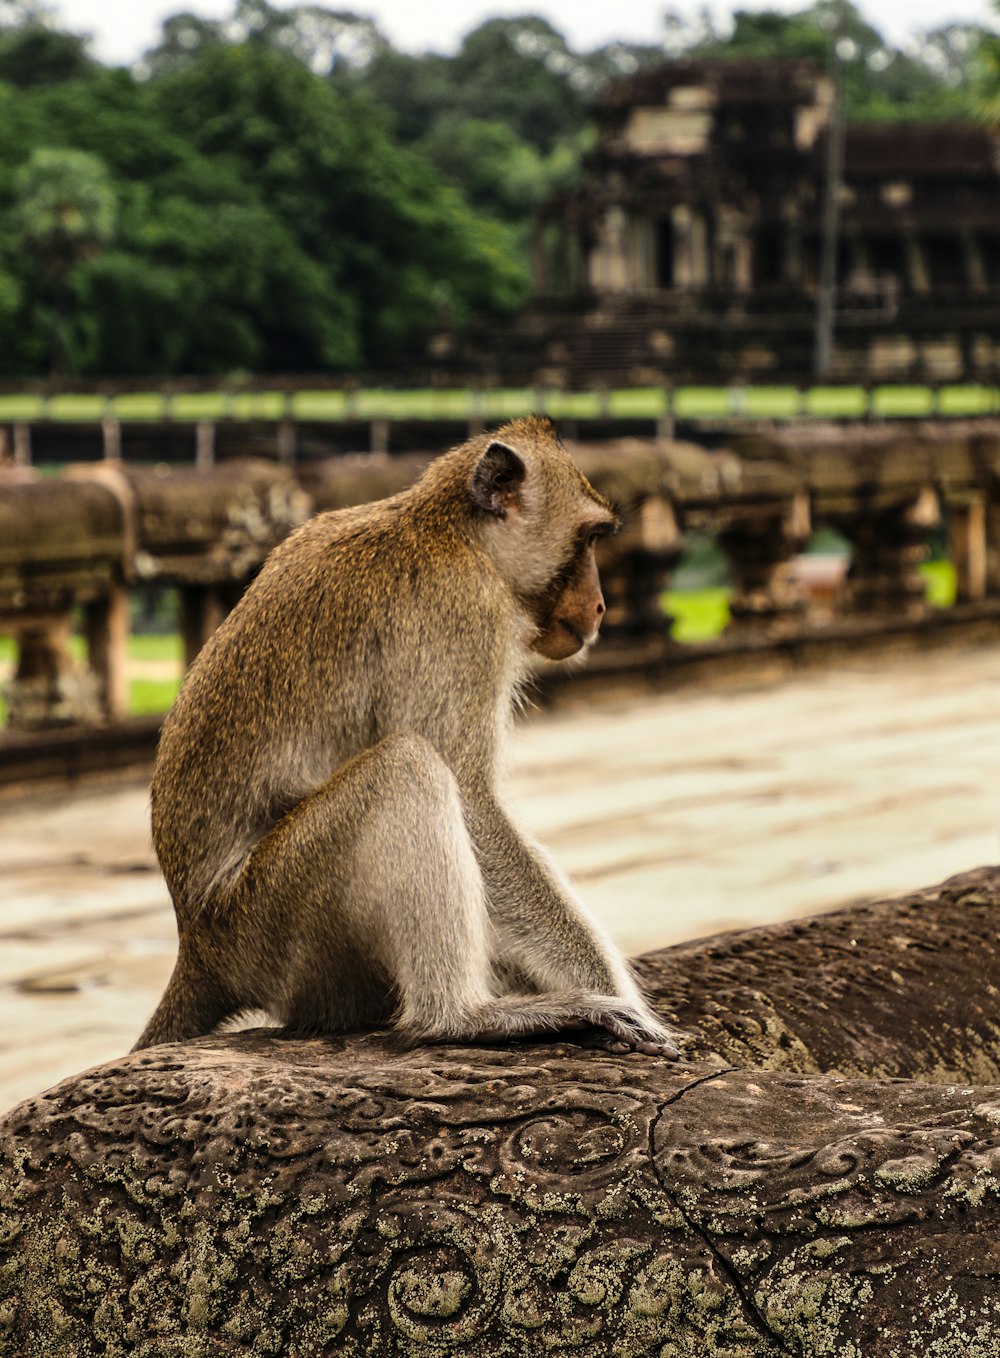 a monkey is sitting on a rock near a body of water